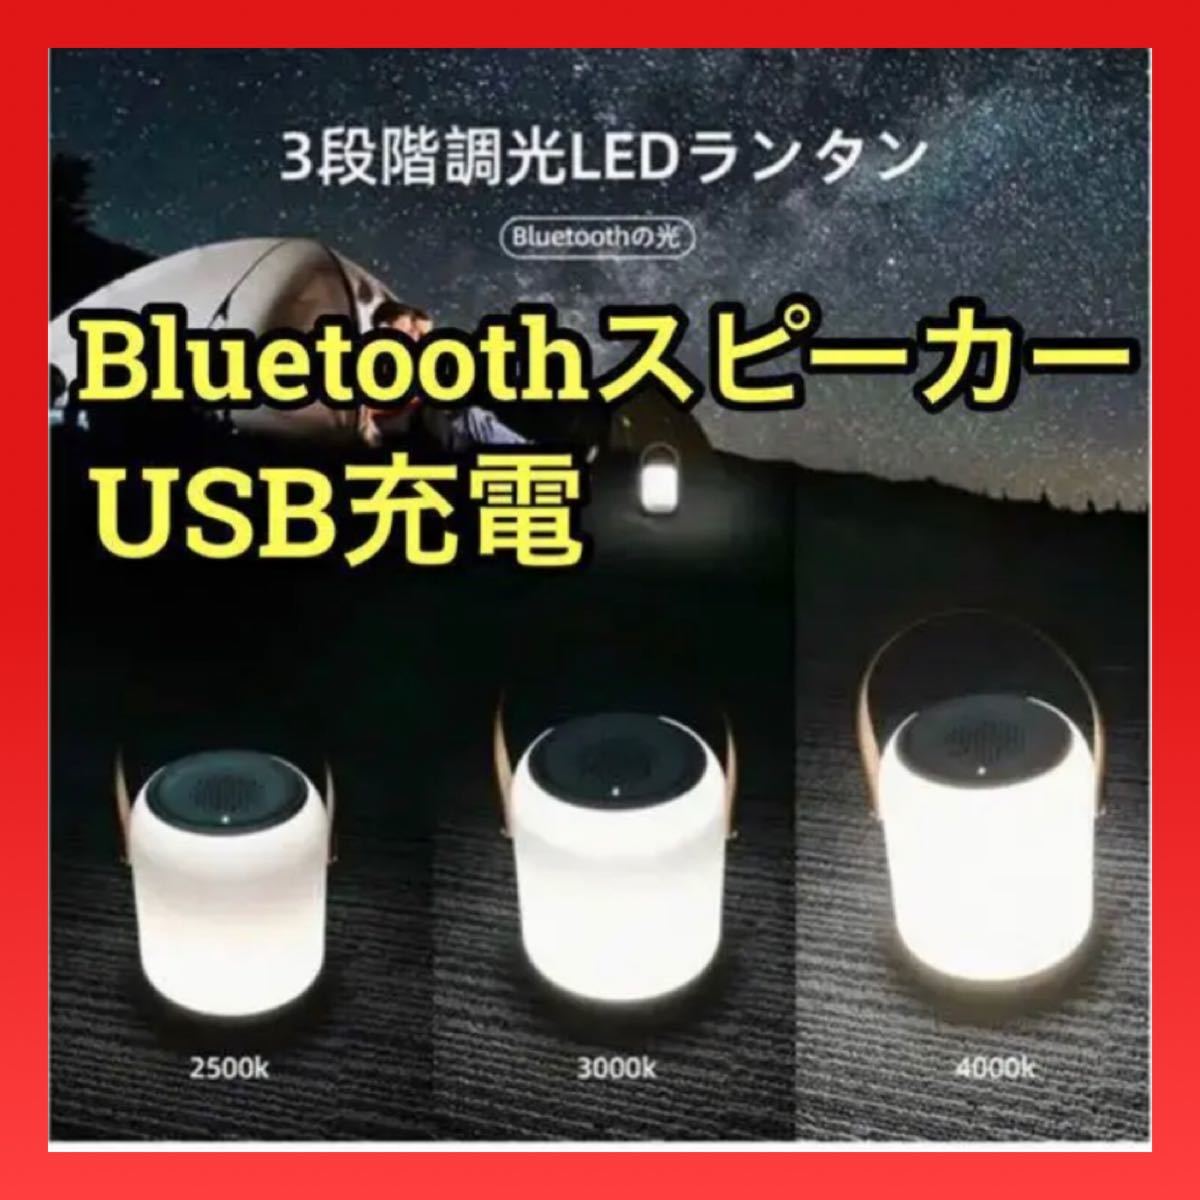 【LEDランタン】 ランタン Bluetooth スピーカー USB アウトドア